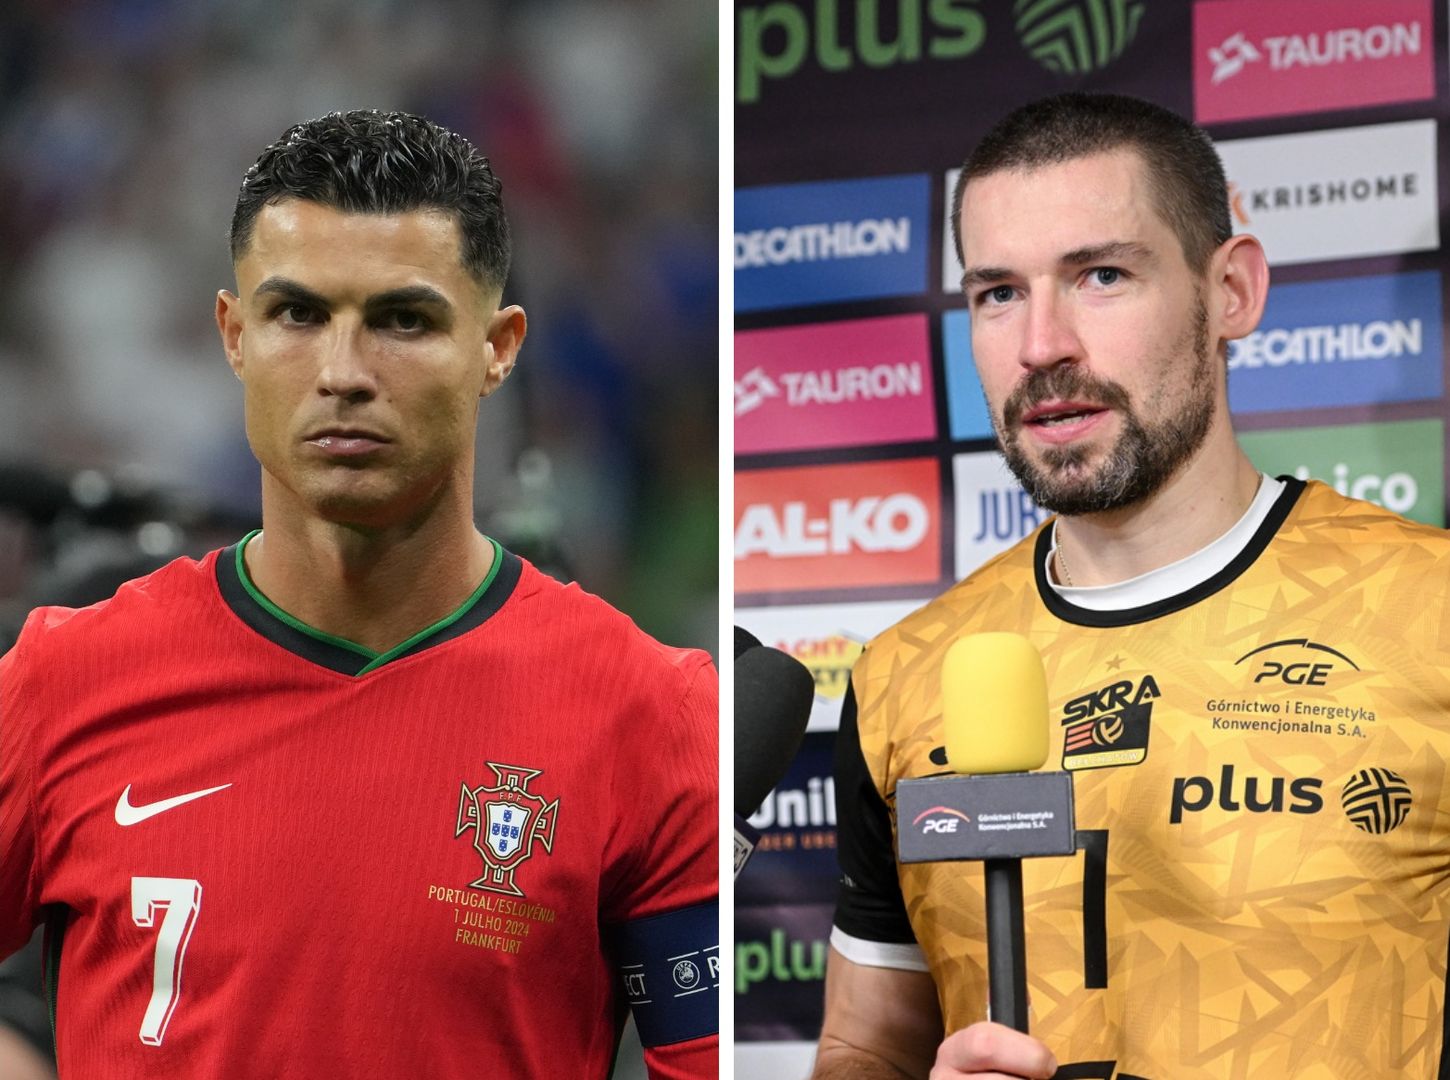 Polski siatkarz zagra w klubie Ronaldo. "Cristiano zadzwonił do mnie..."